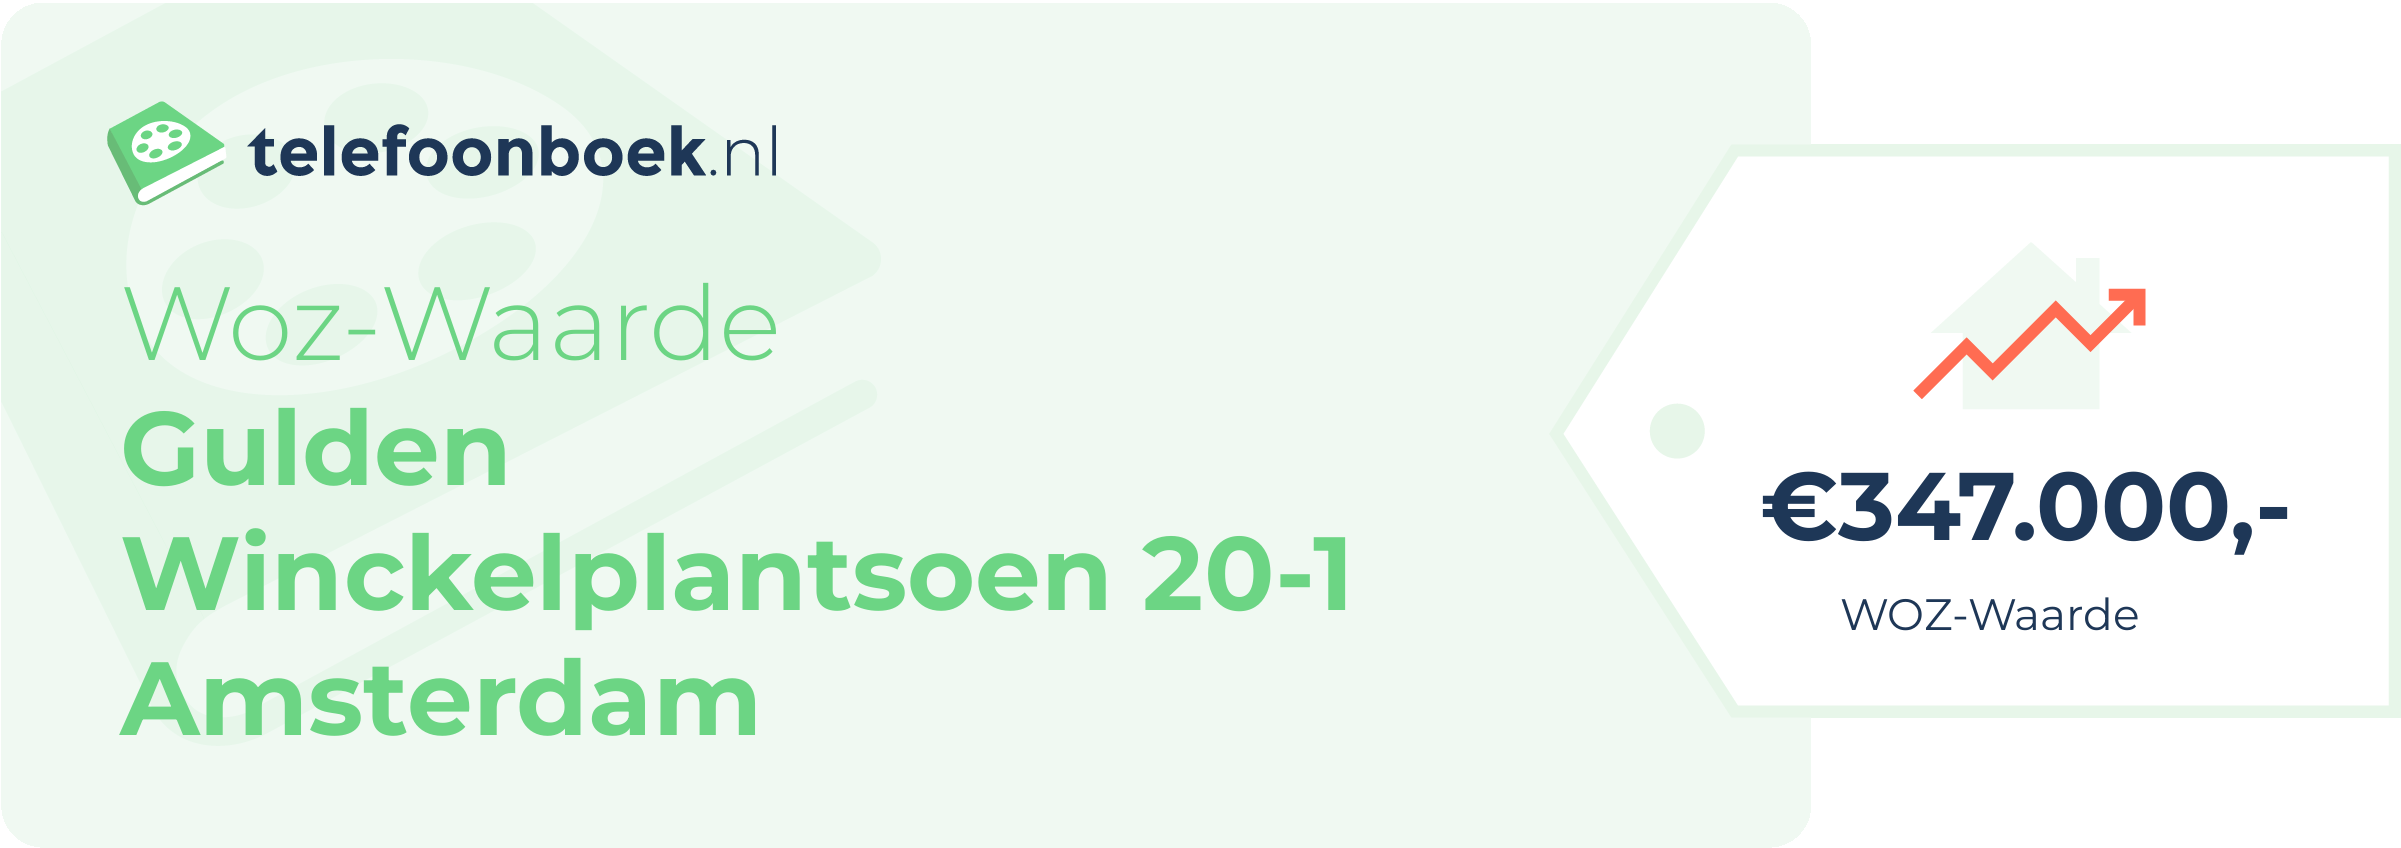 WOZ-waarde Gulden Winckelplantsoen 20-1 Amsterdam